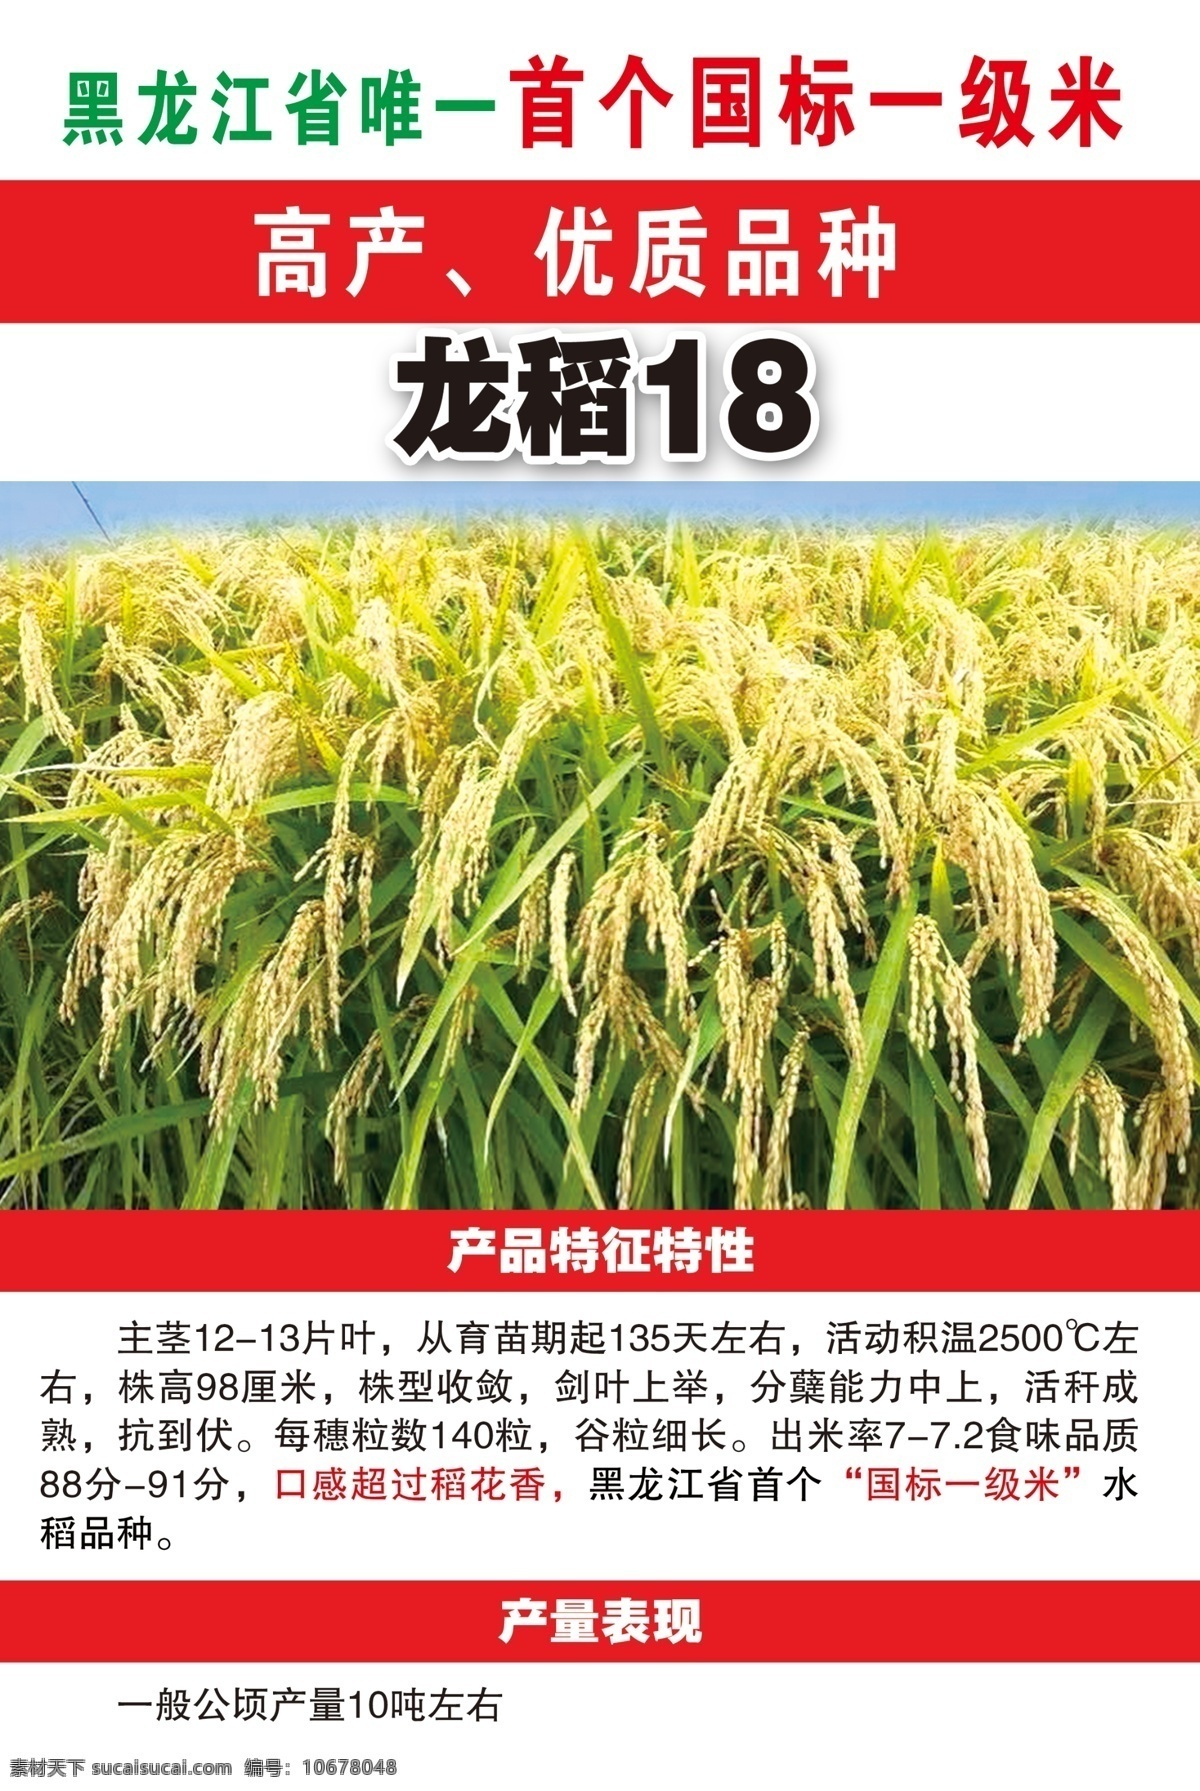 龙稻18 稻田 麦子 小麦 小稻 种子 农副产品 农业 稻子 大麦 植物 稻田地 茂密 大米 水稻 一级水稻 分层